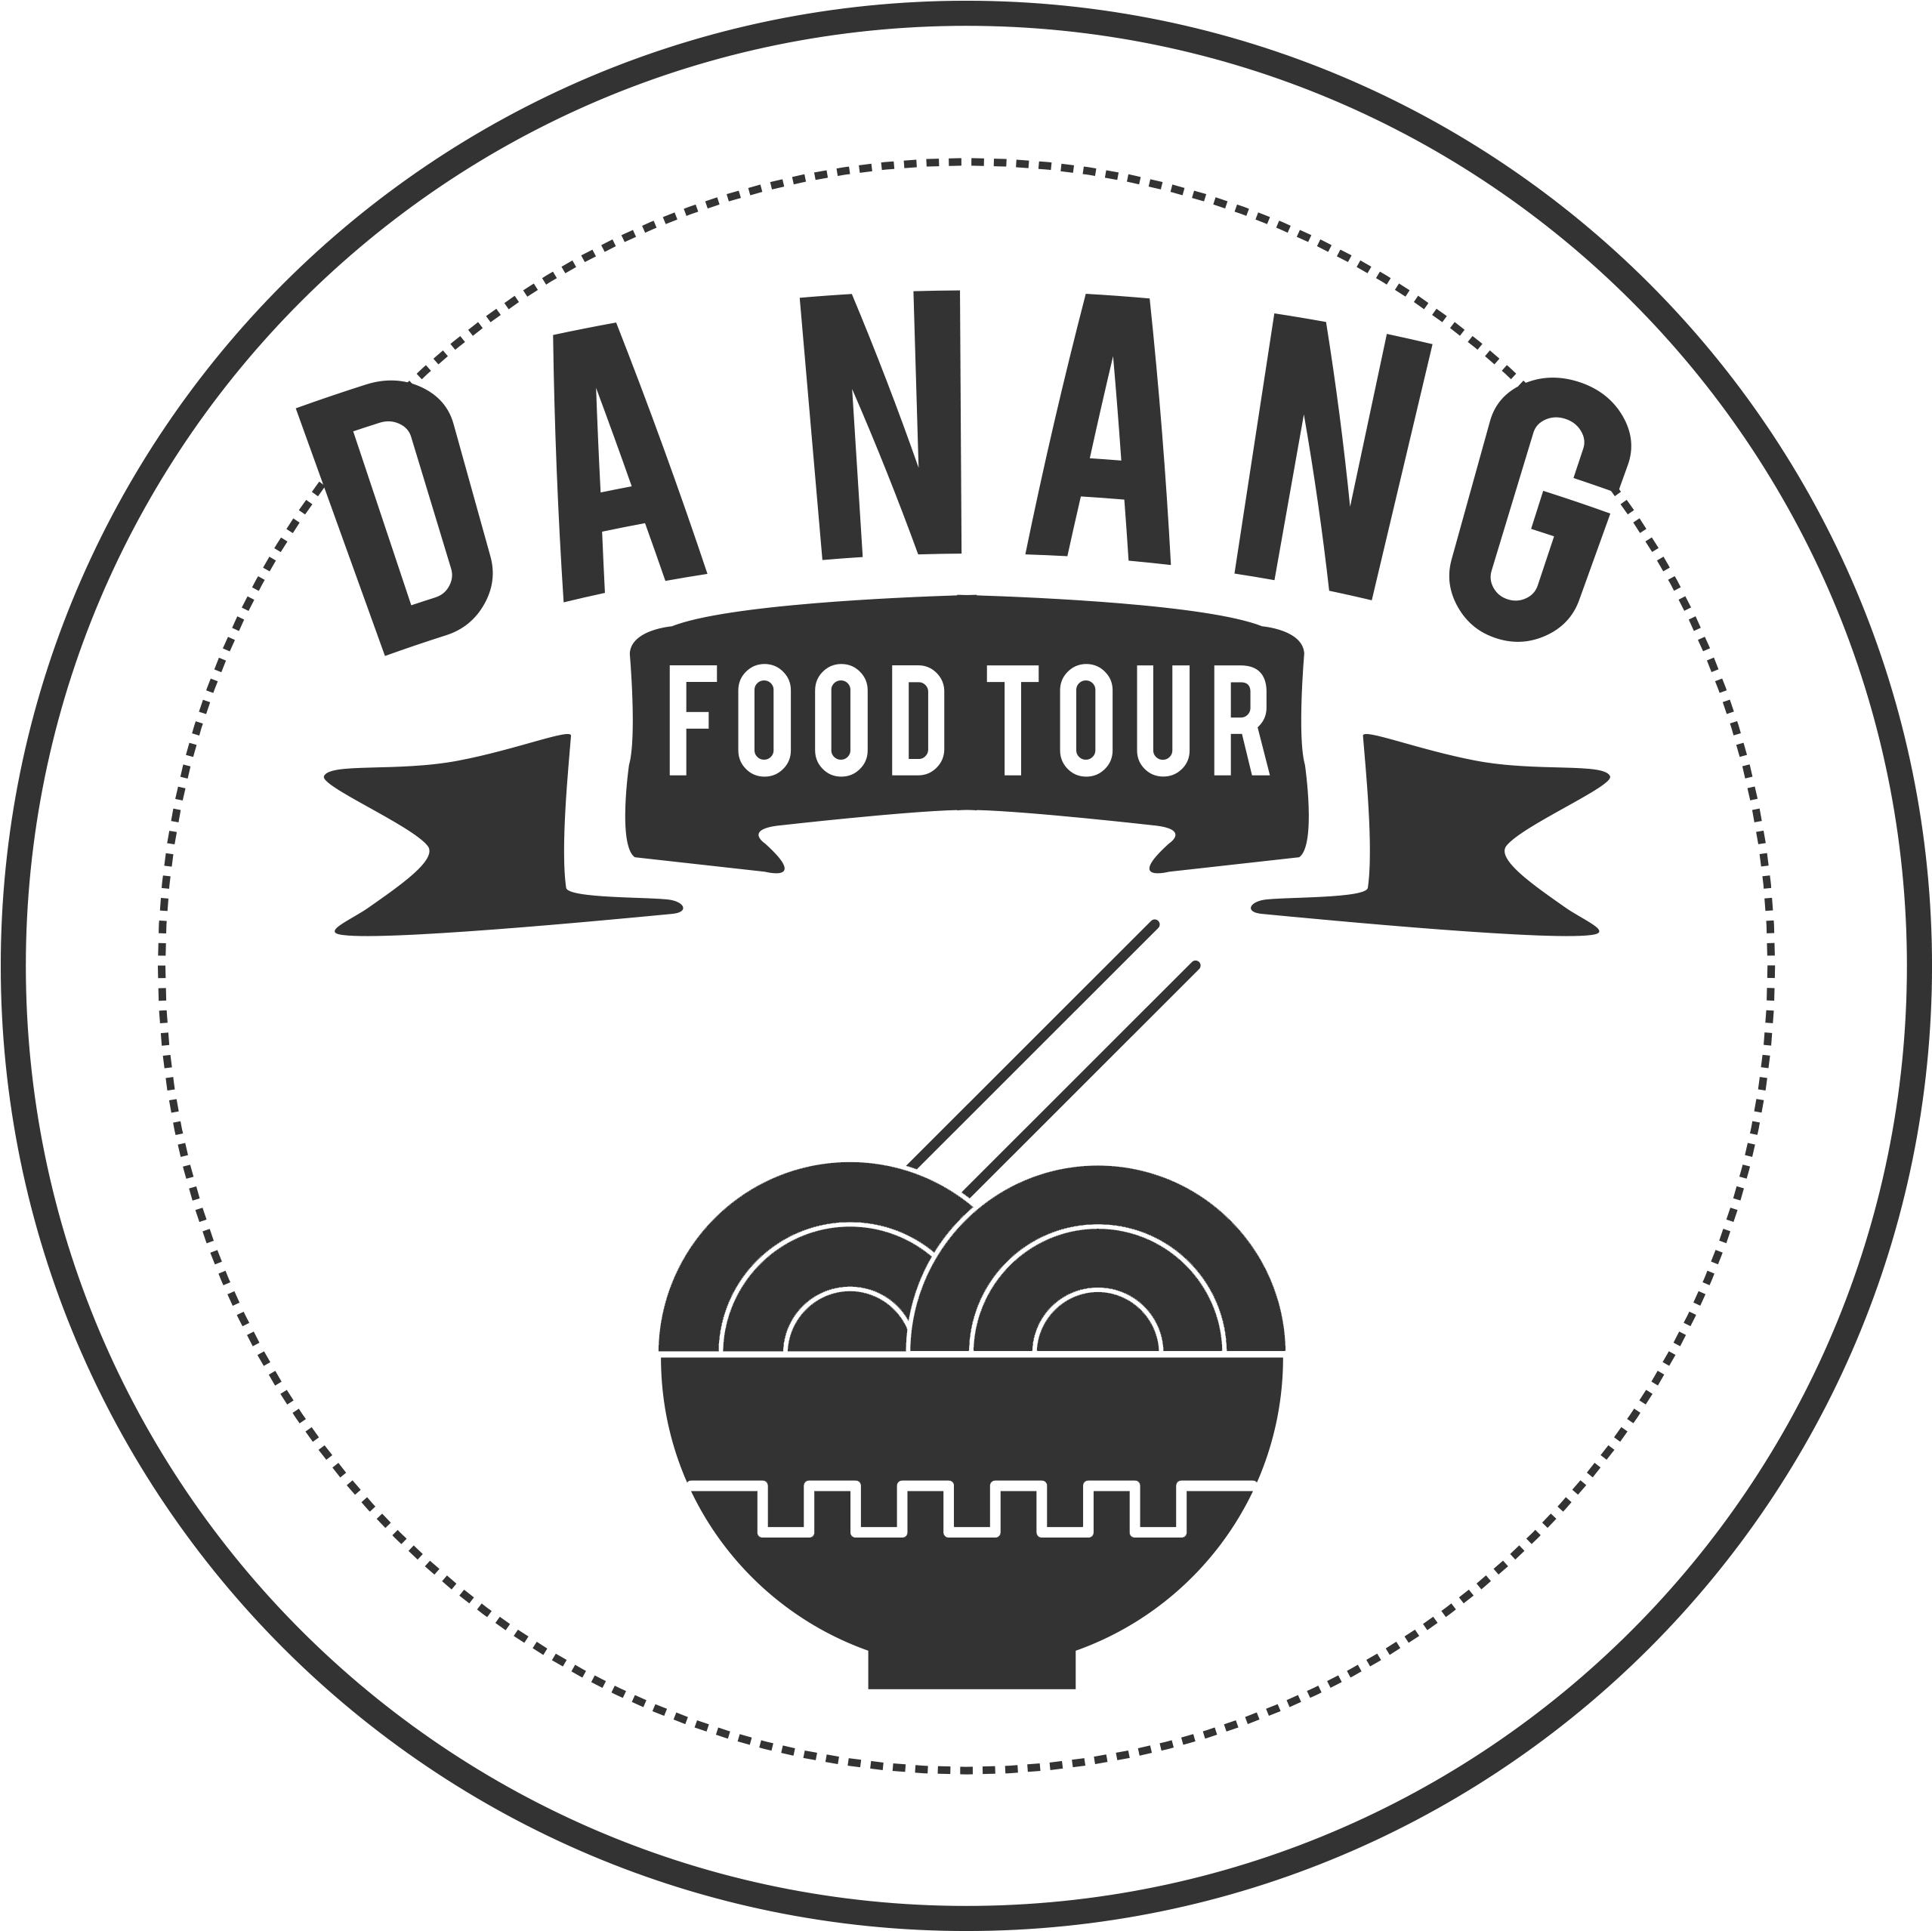 Da Nang Food Tour - Cruz Azul Escudo Retro Clipart (2639x2638), Png Download